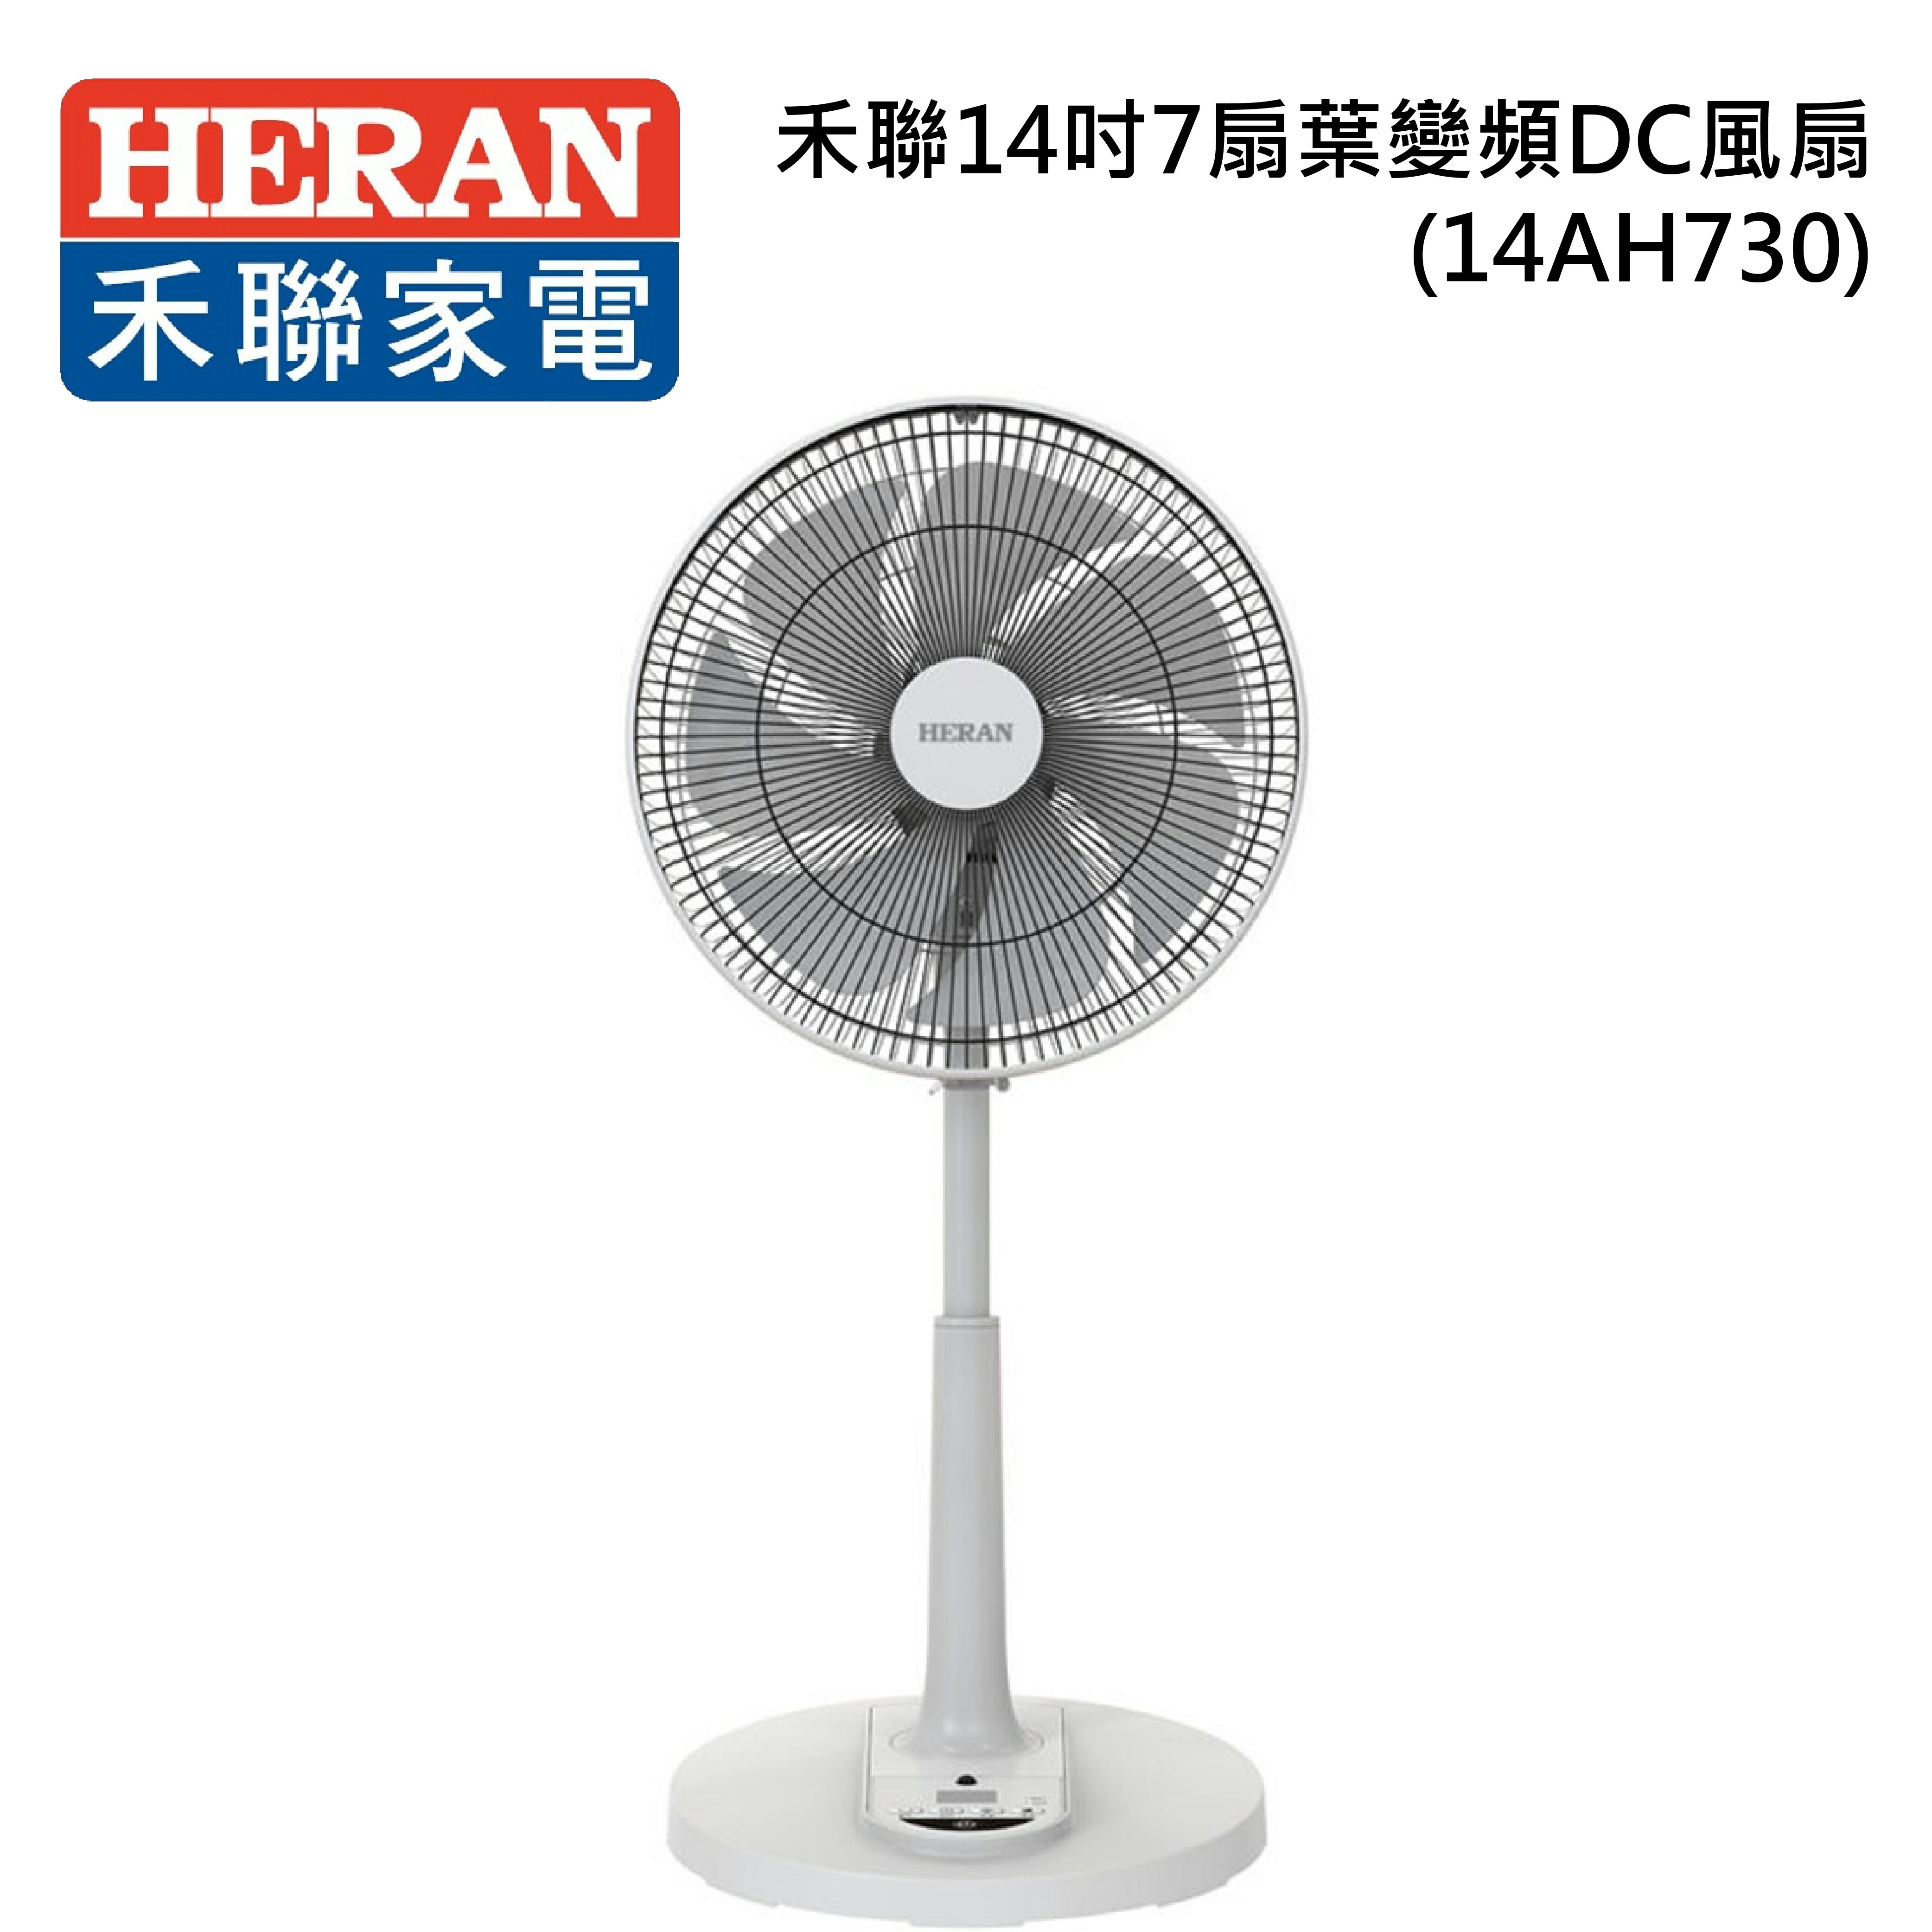 禾聯14吋7扇葉變頻DC直立式風扇(HDF-14AH730)